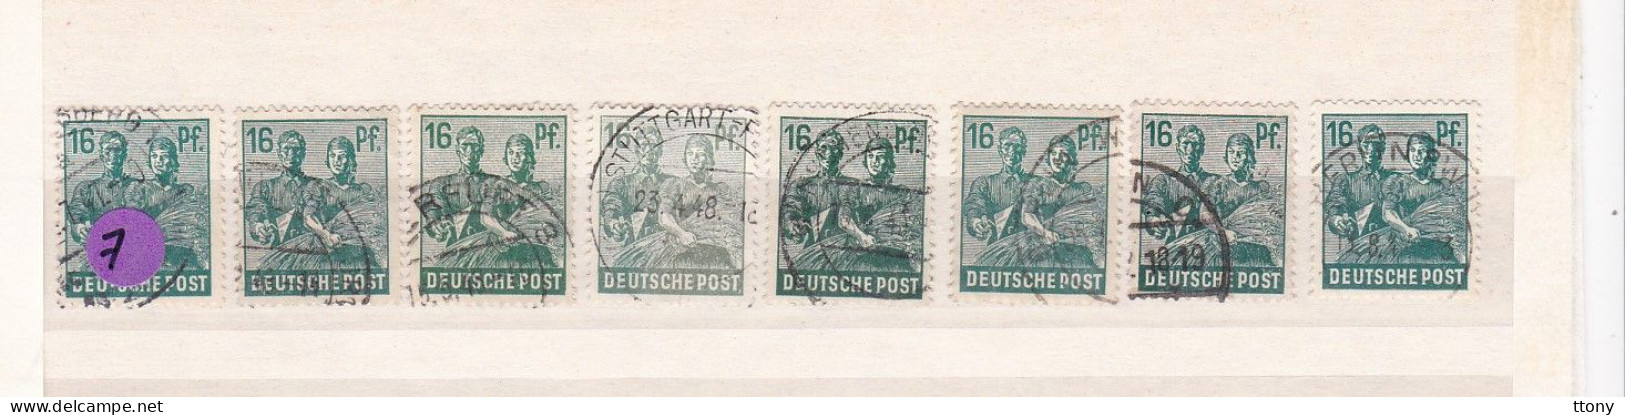 Un Lot De 8  Timbres Oblitérés  16 Pfennig  Deutsche Post Allemagne  N° 38  Occupation Alliée   Zone Interalliée AAS - Usados